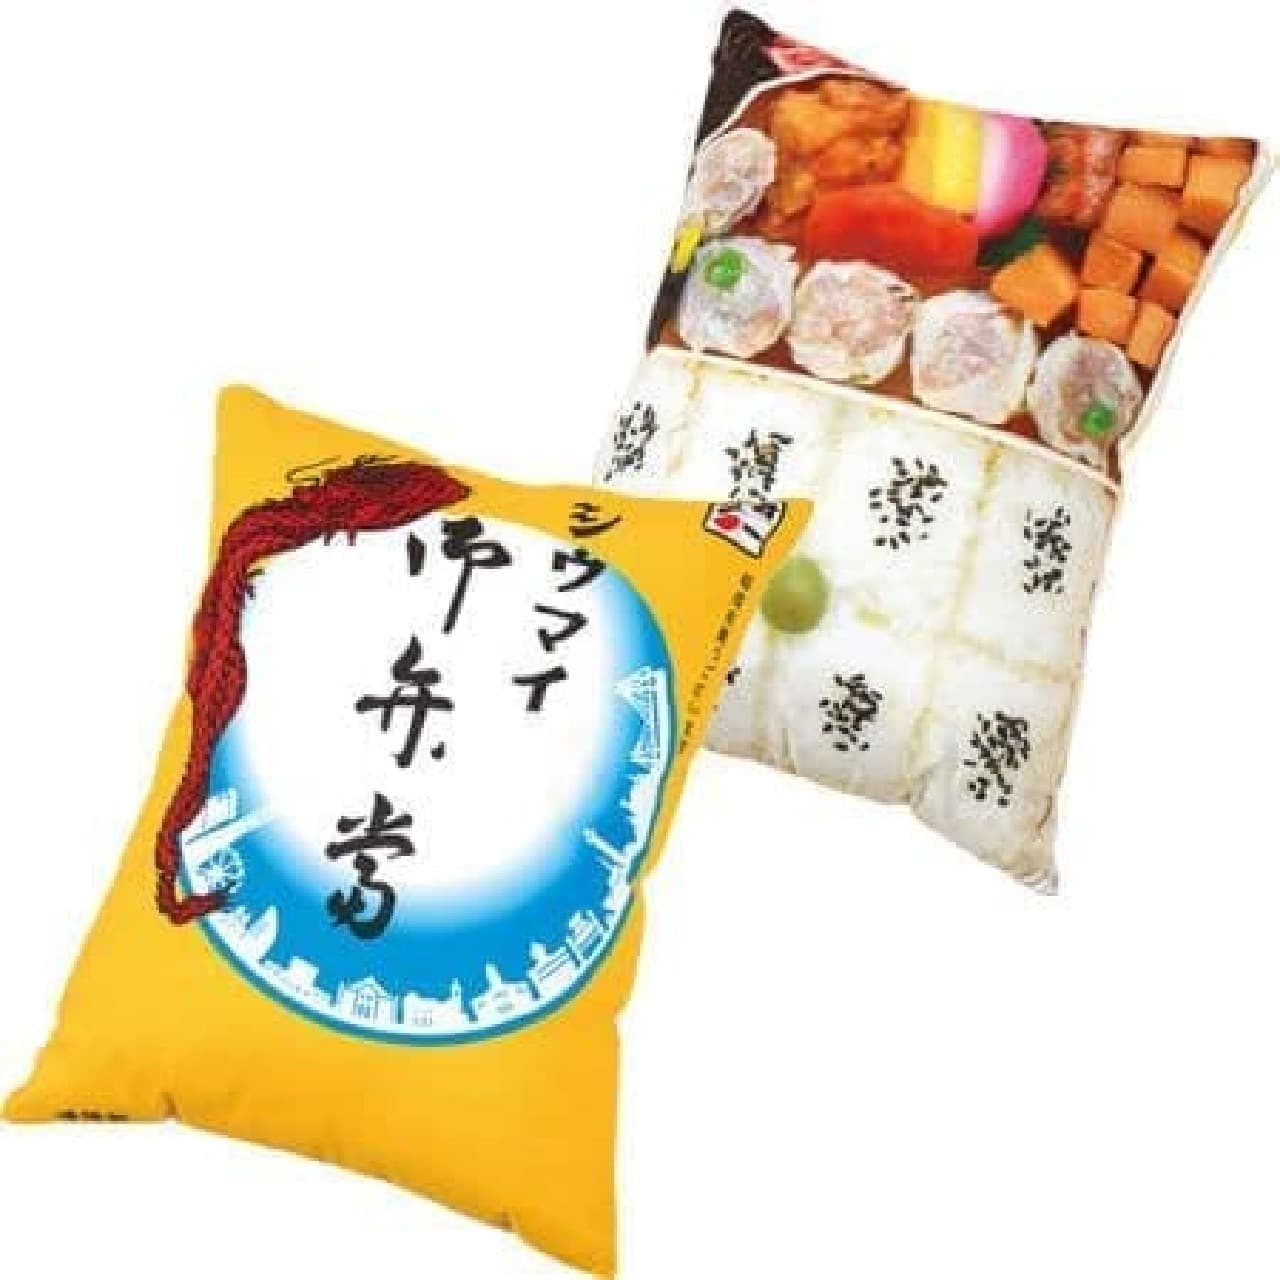 Kiyoken "Shiumai Bento Cushion"